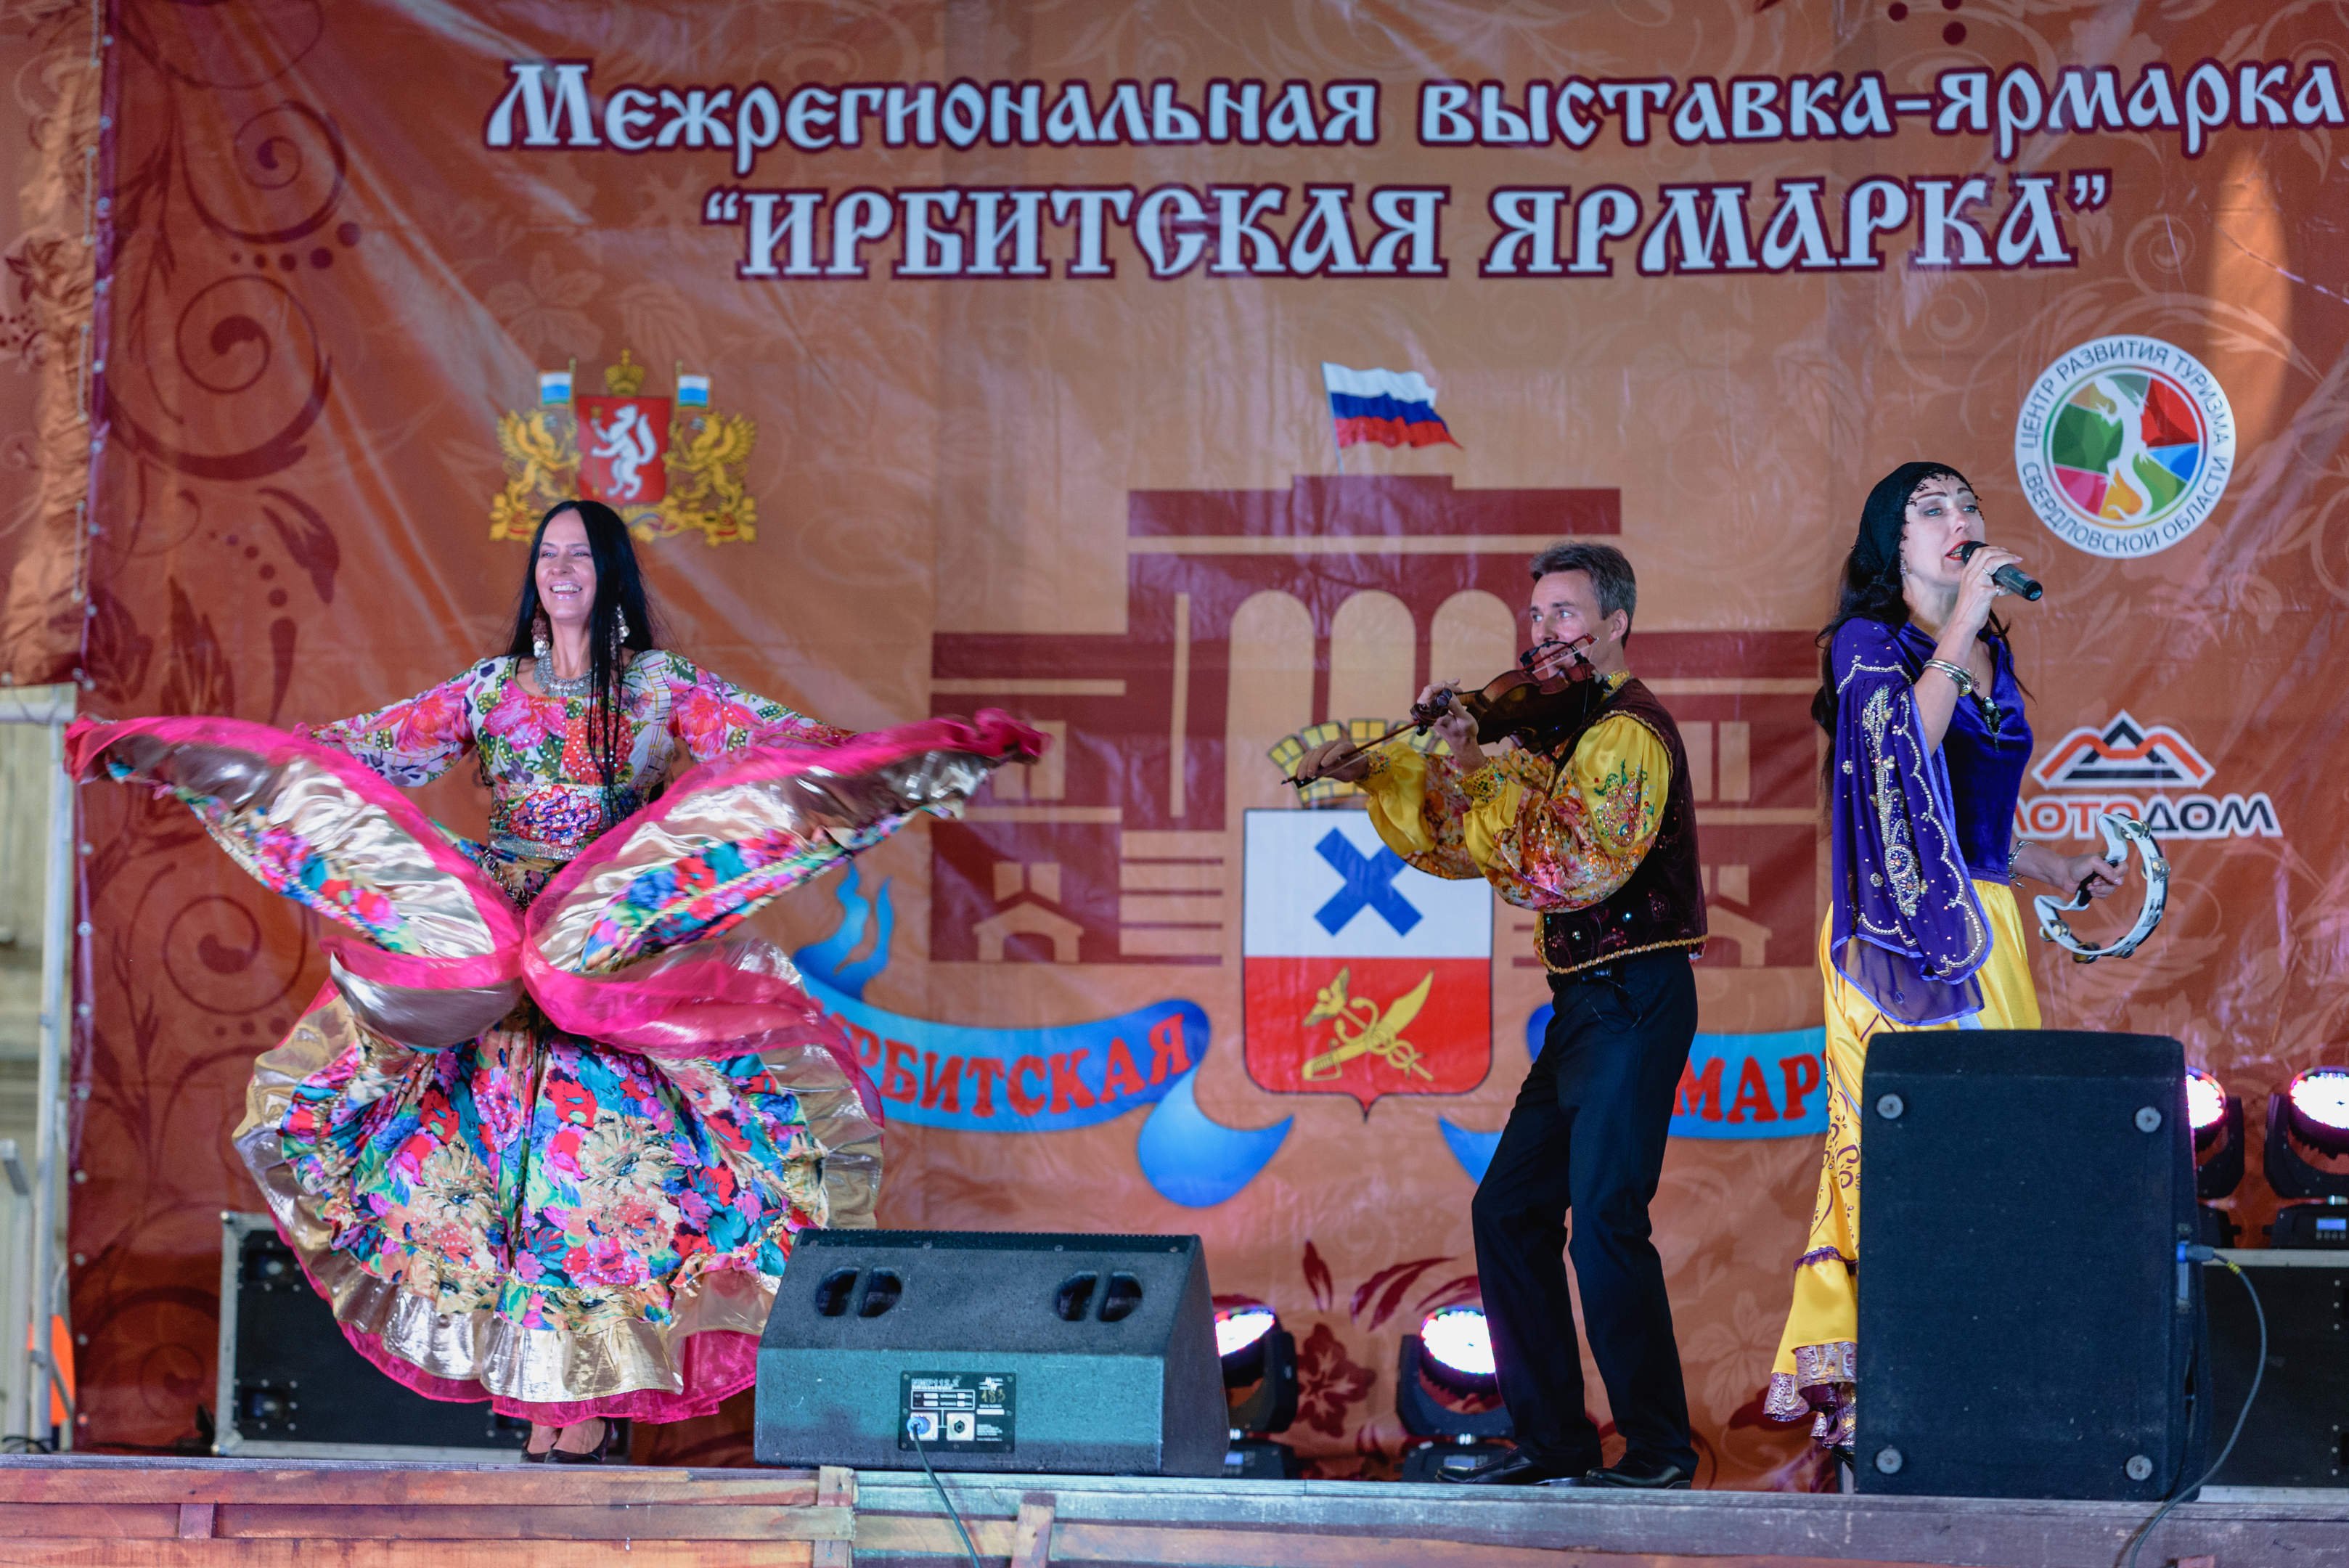 С традициями коренных народов Северного Урала предлагает познакомиться знаменитая Ирбитская ярмарка